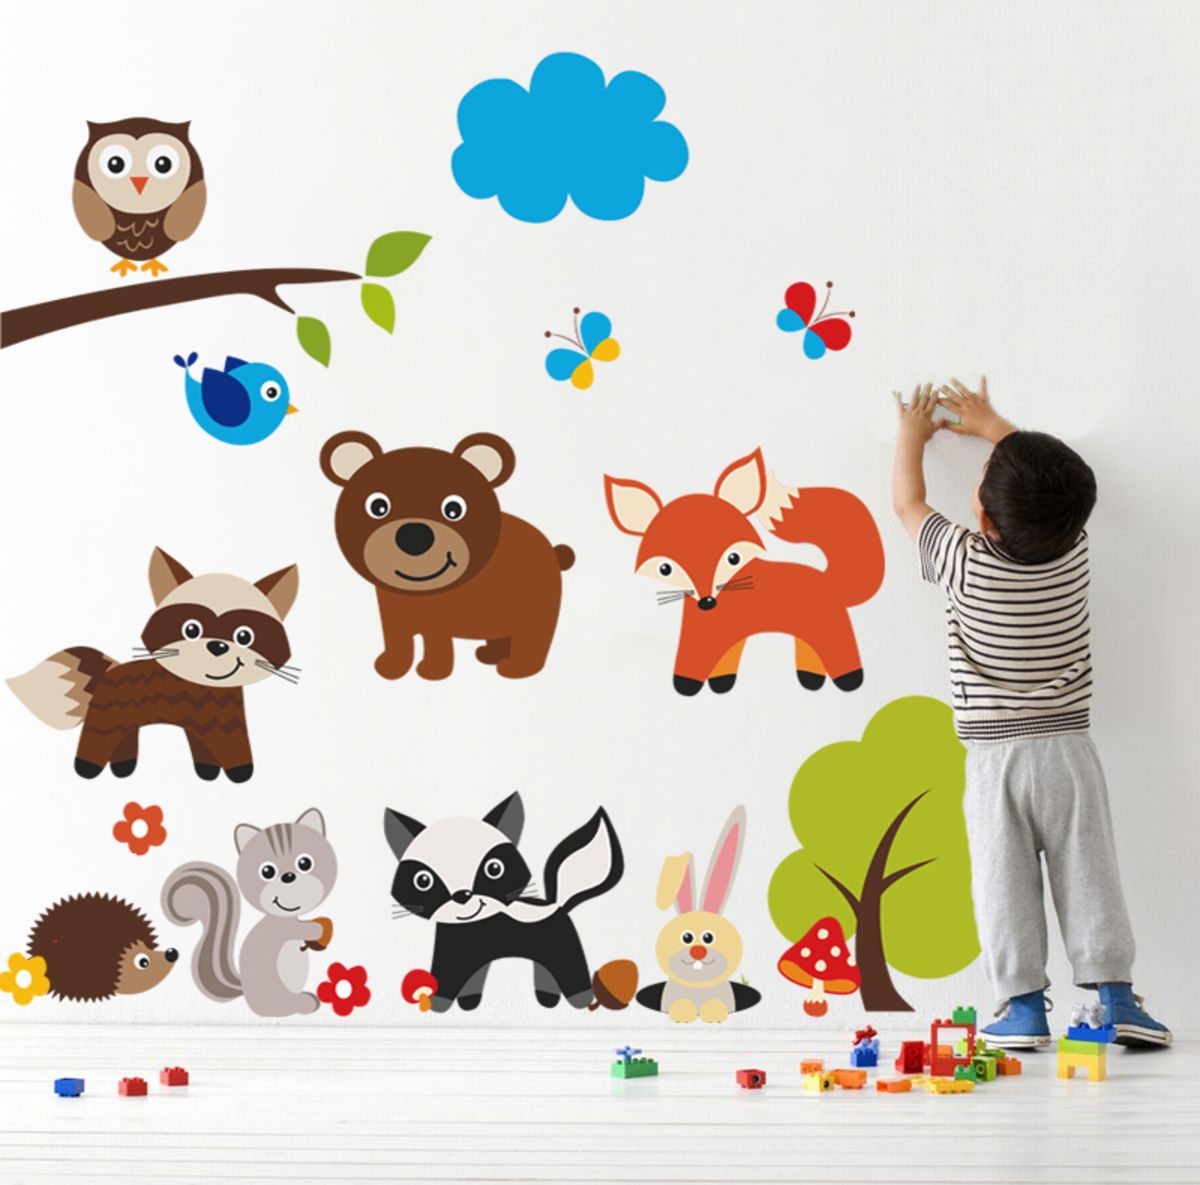 Samolepka na zeď Housedecor Bear and animals 4488-0, 70x50 cm - obrázek 1